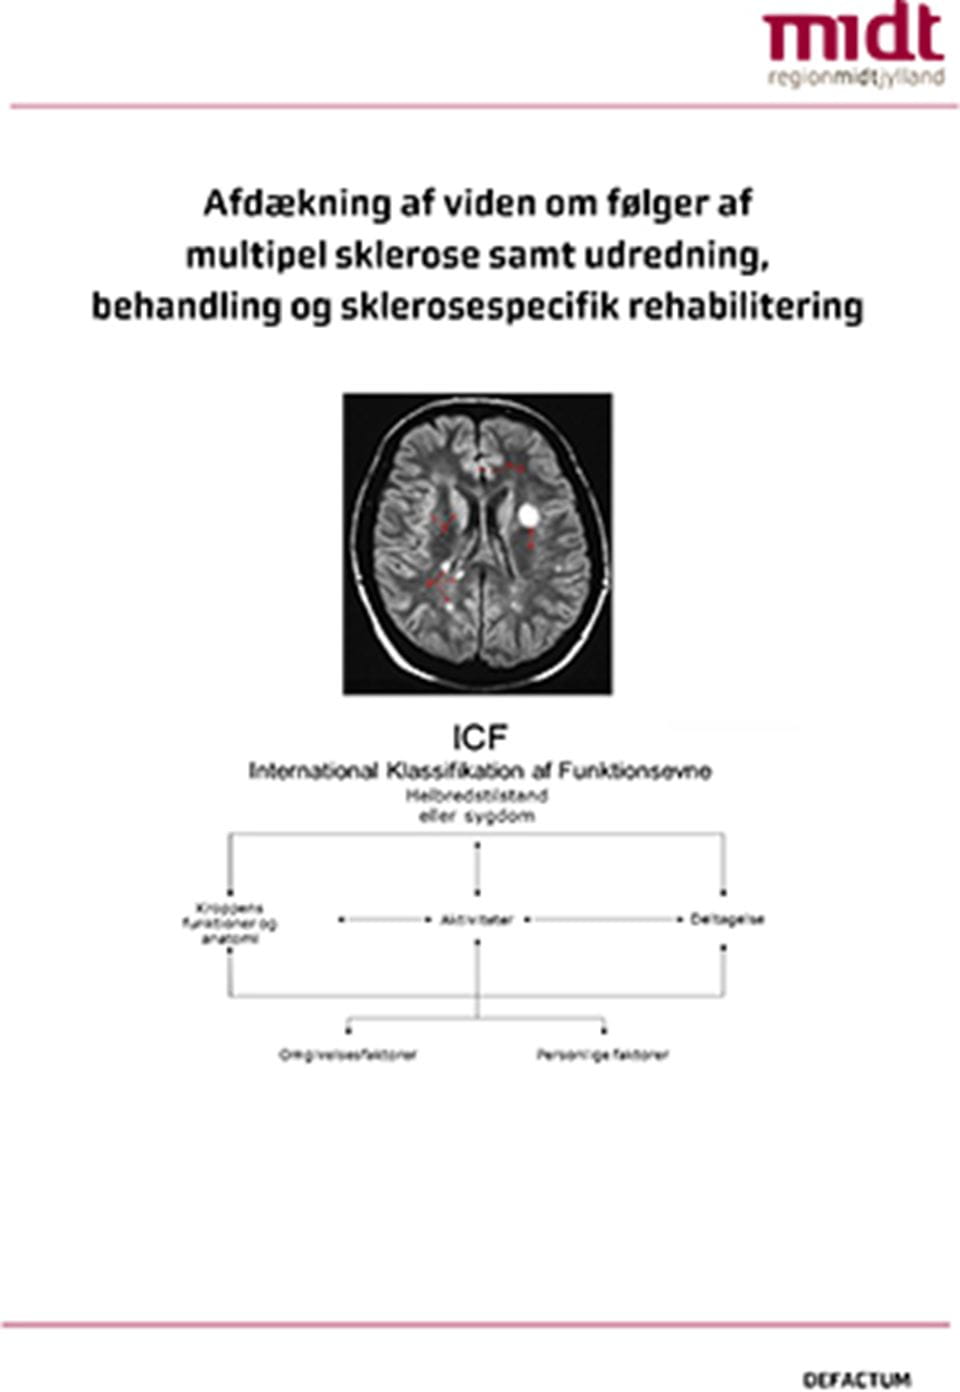 Afdækning af viden om følger af multipel sklerose samt udredning behandling og sklerosespecifik rehabilitering